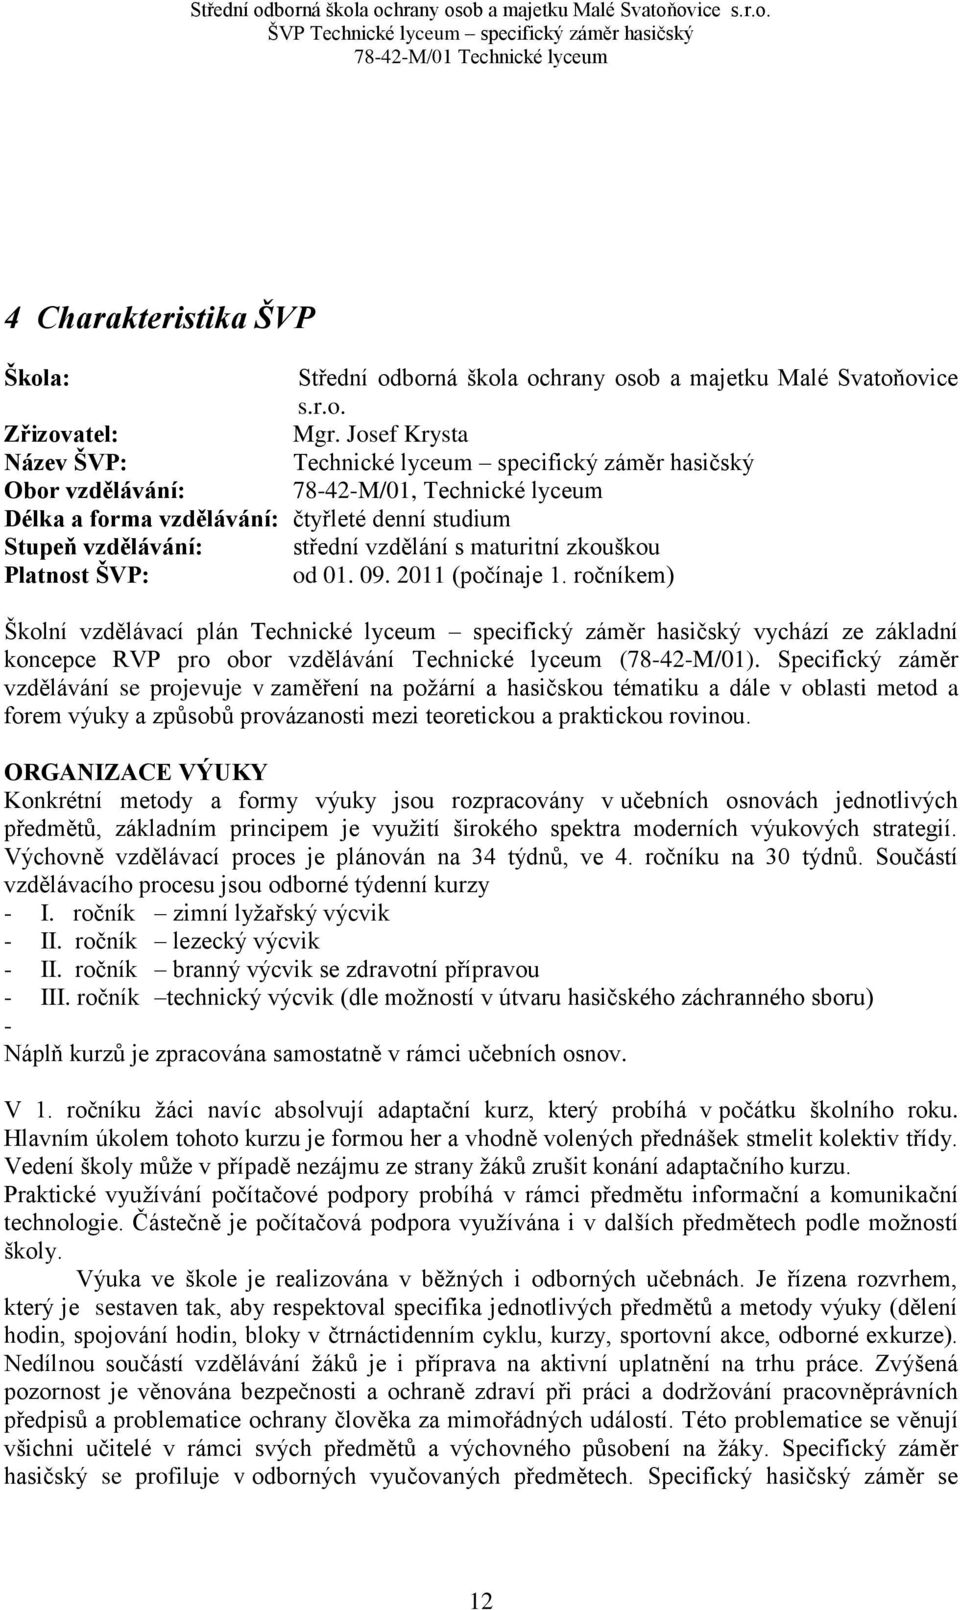 maturitní zkouškou Platnost ŠVP: od 01. 09. 2011 (počínaje 1.